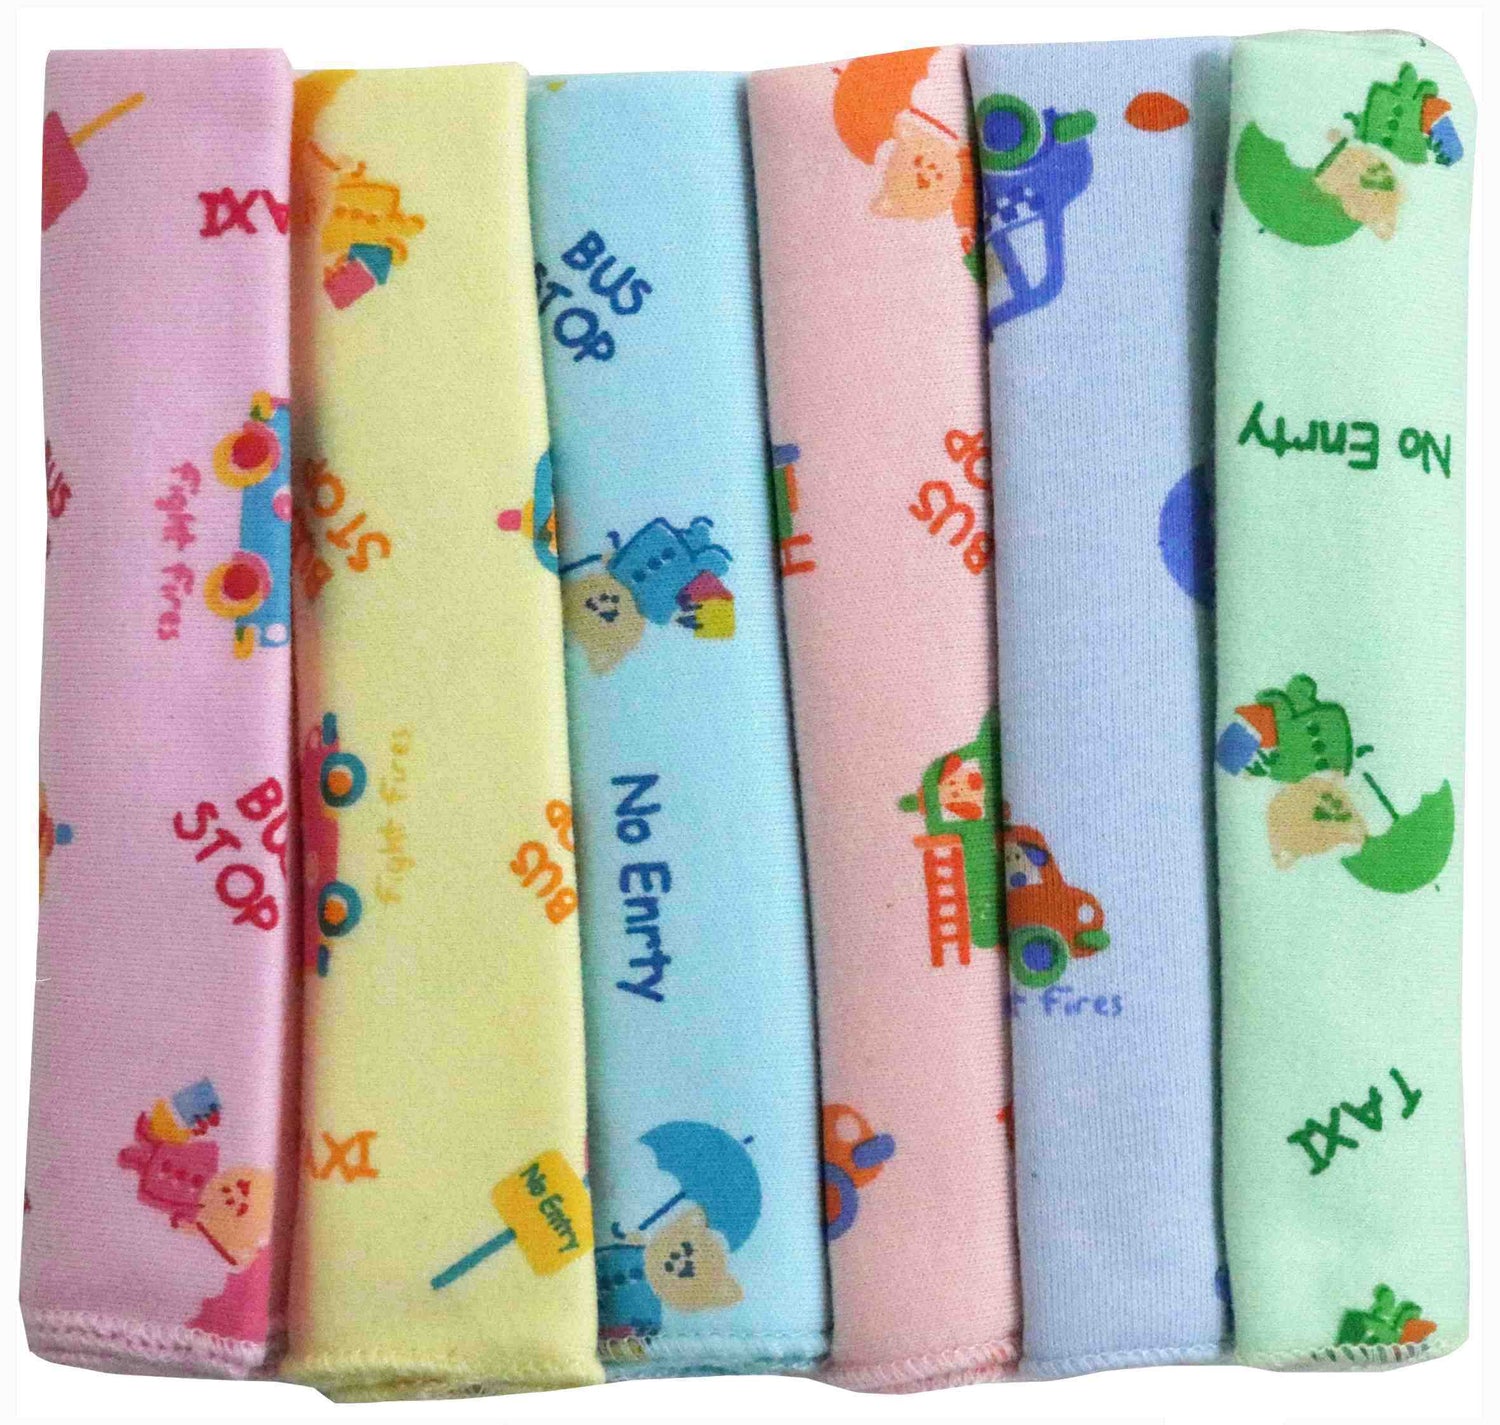 Newborn pure soft cotton face towels cum napkins pack of 6 pcs. - FAVISM